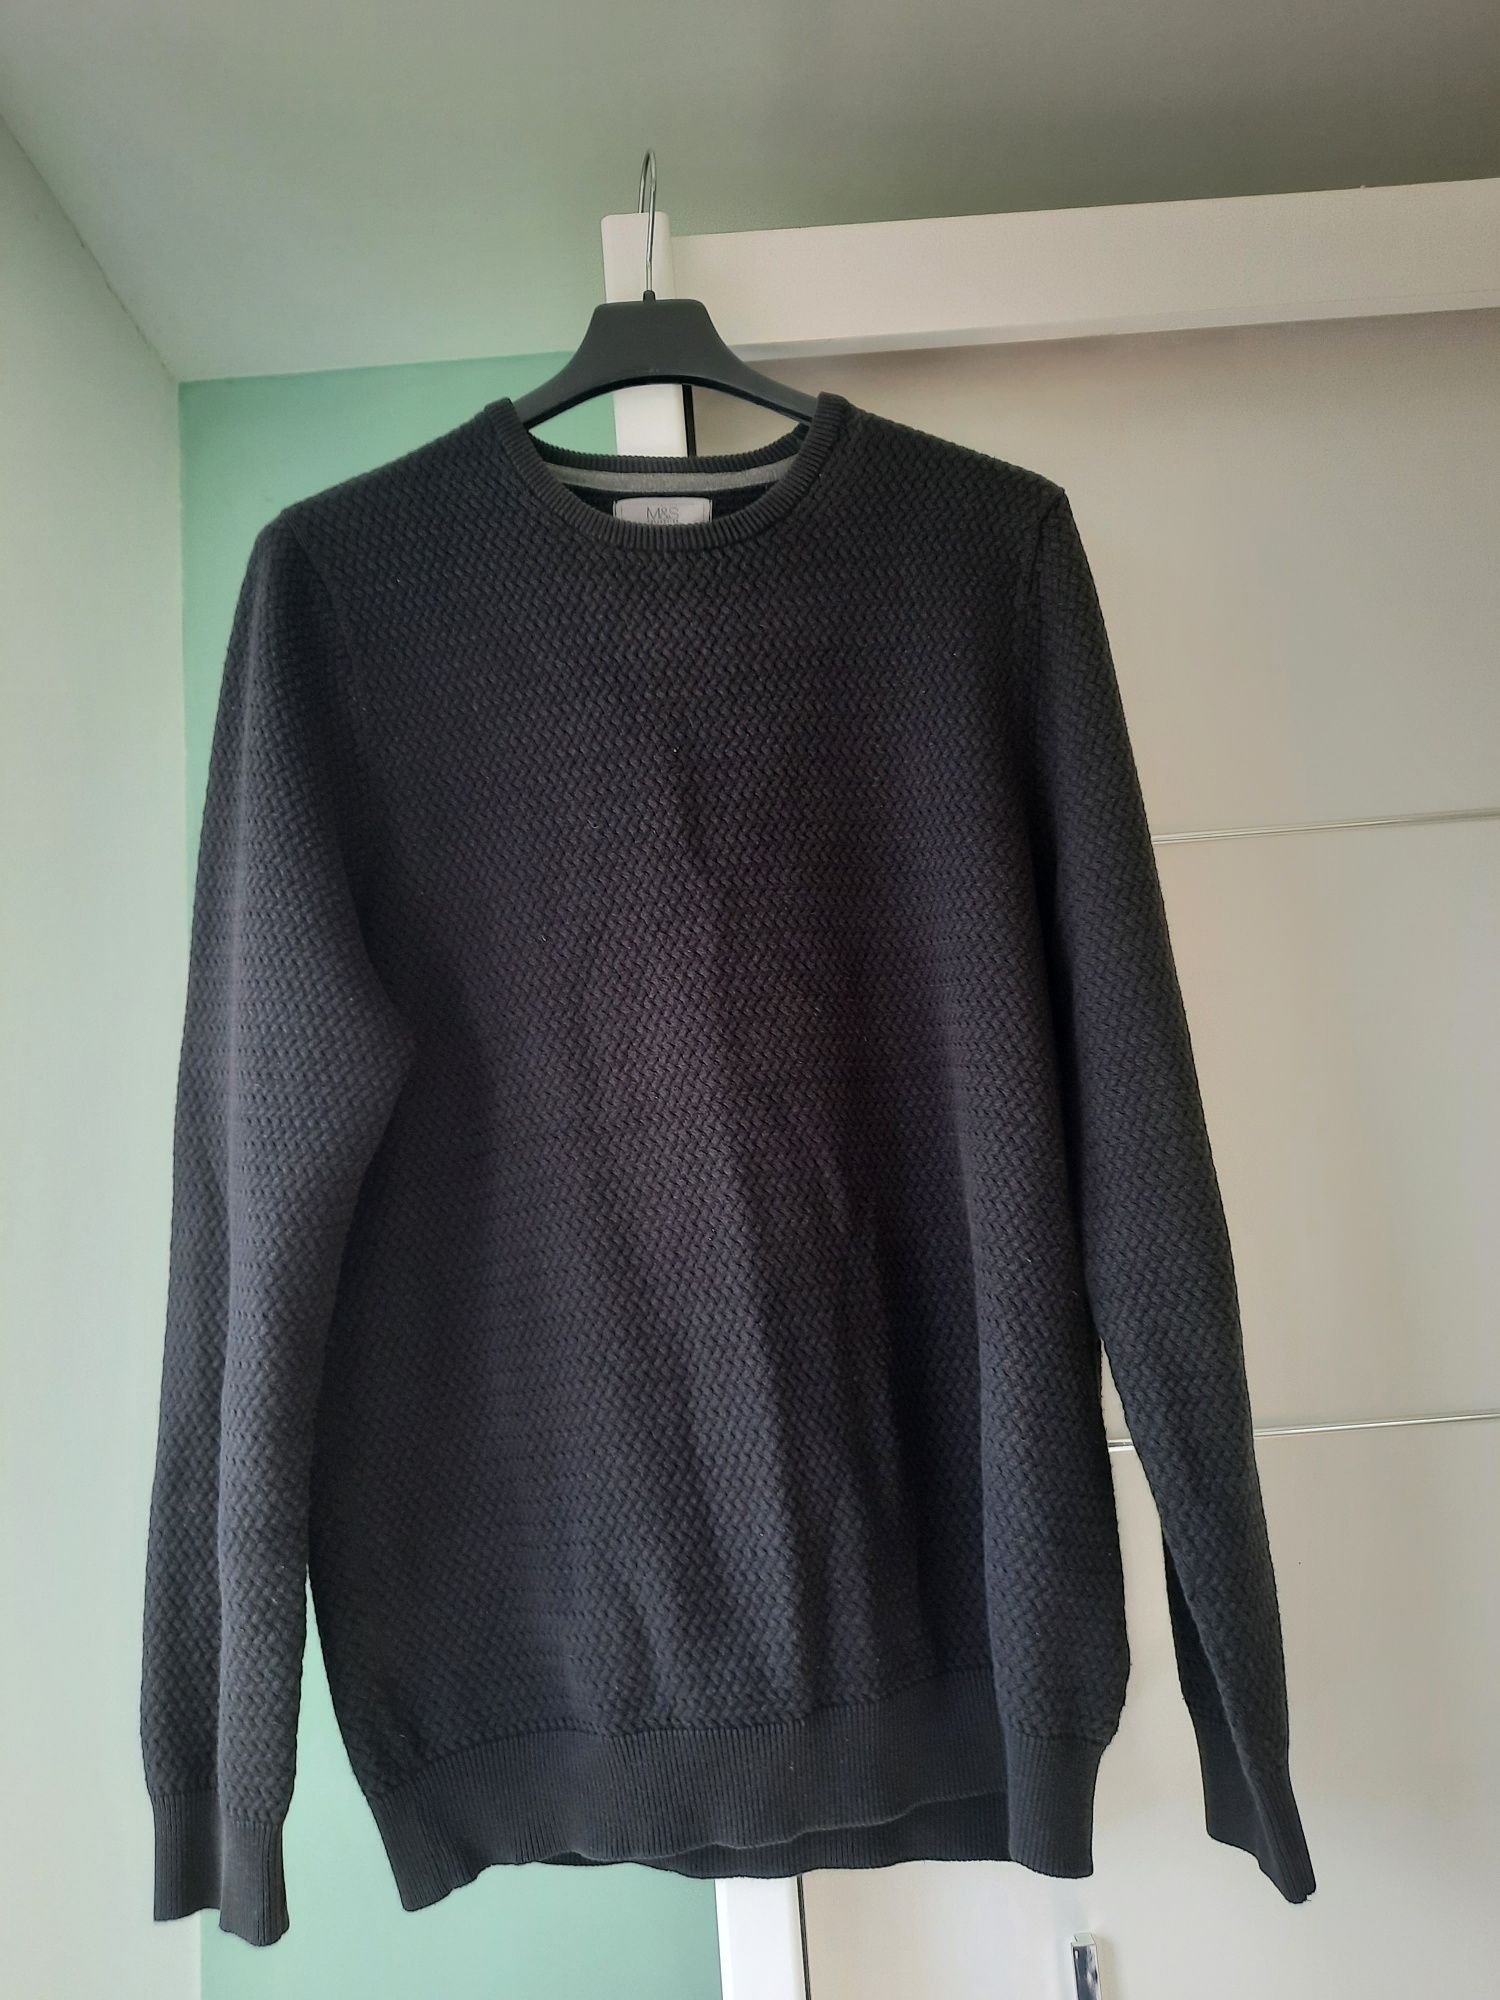 Sweter męski czarny premium 100% bawełna. Marks&Spencer  Rozmiar M /L.